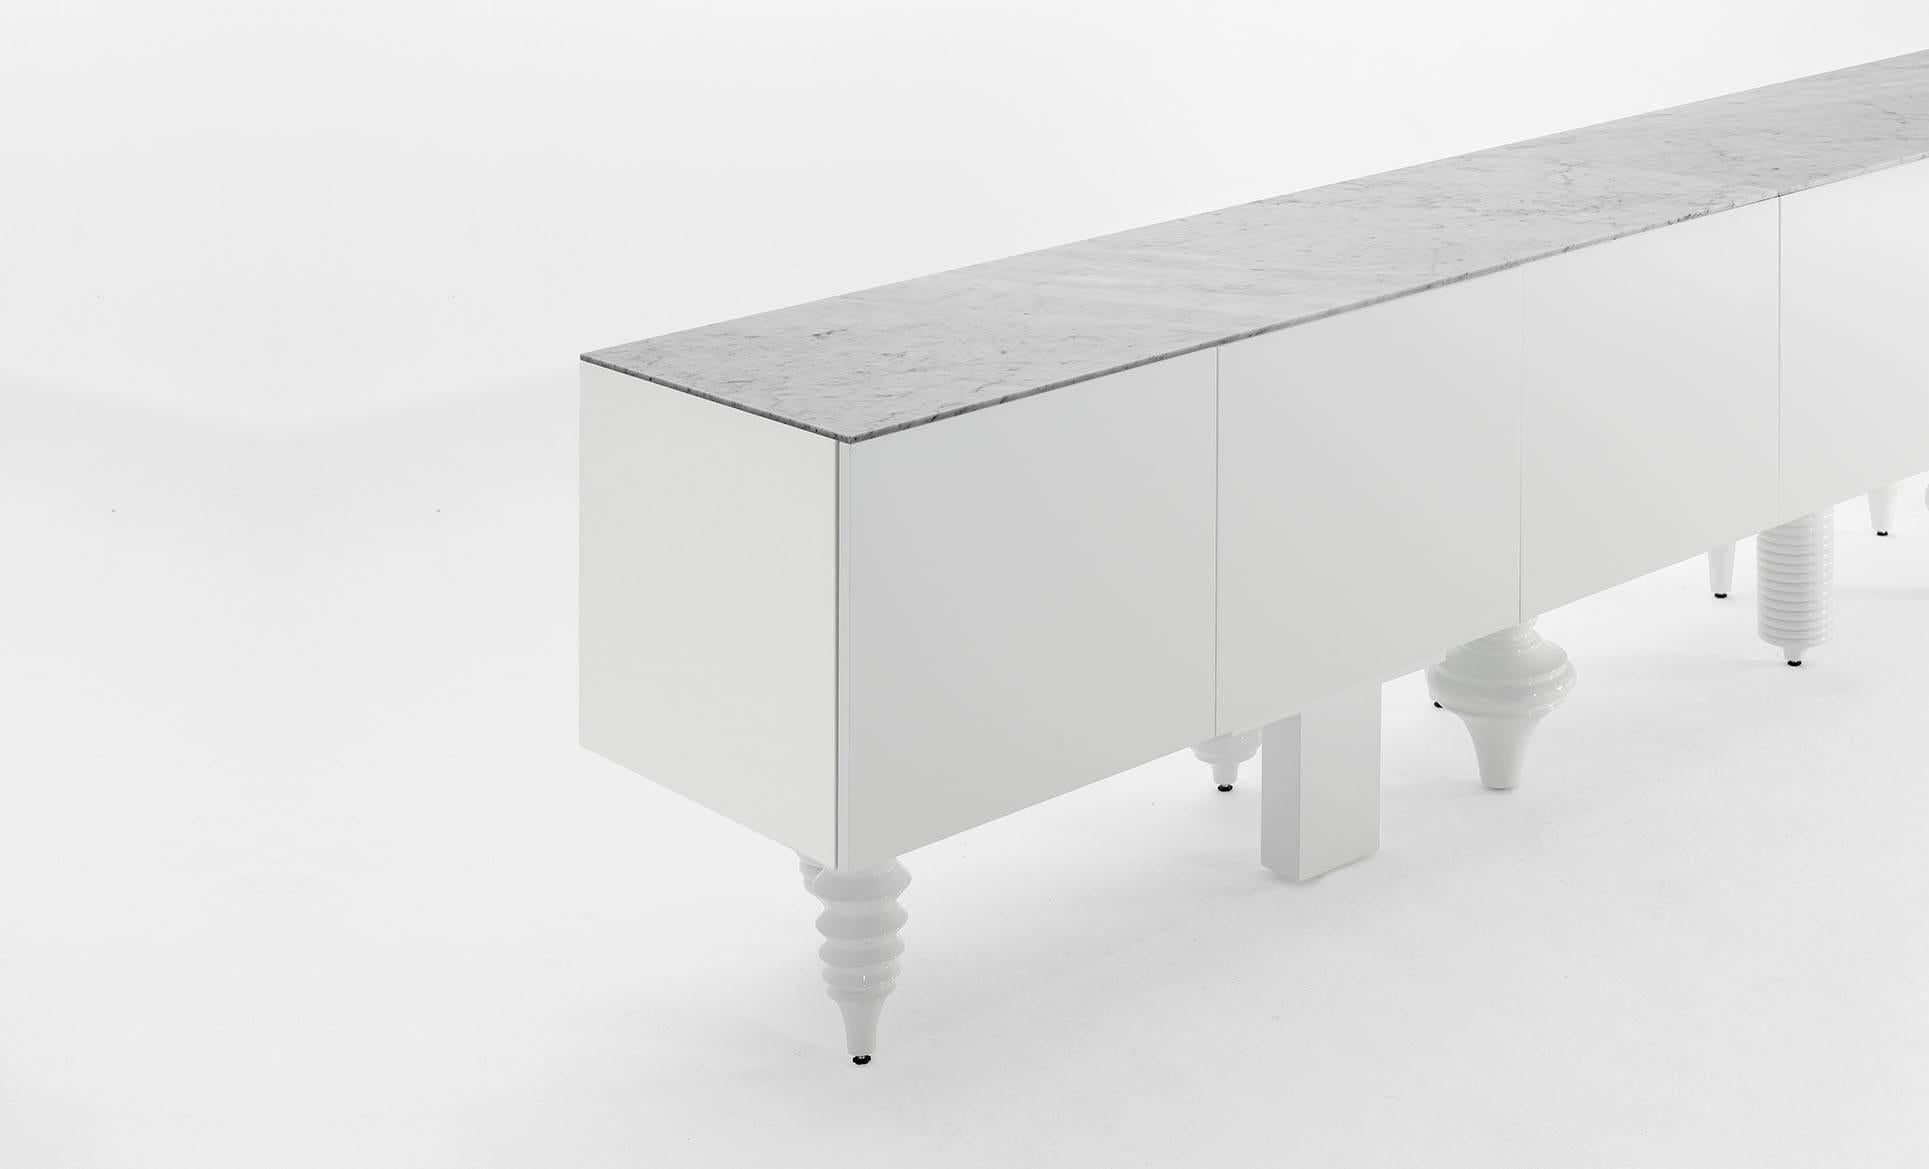 Jaime Hayon cabinet white multileg cabinet conçu en 2016 et fabriqué par BD Barcelona.

Un meuble modulaire polyvalent et multi-pieds. Il est disponible avec une douzaine de designs différents inspirés de différents styles. Il permet diverses